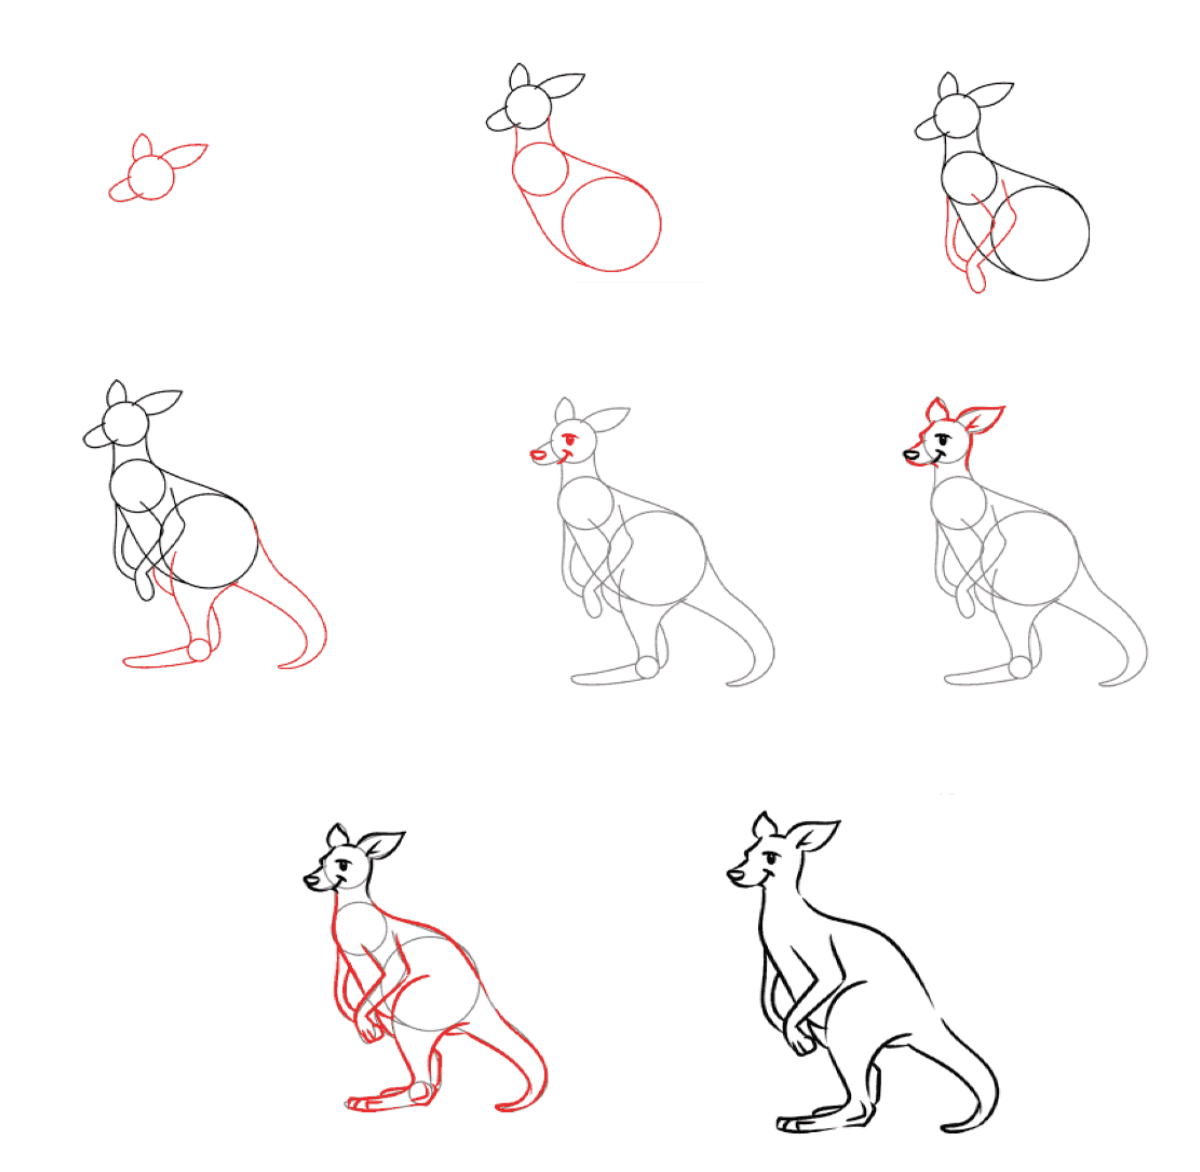 Kangaroo idea (12) Drawing Ideas